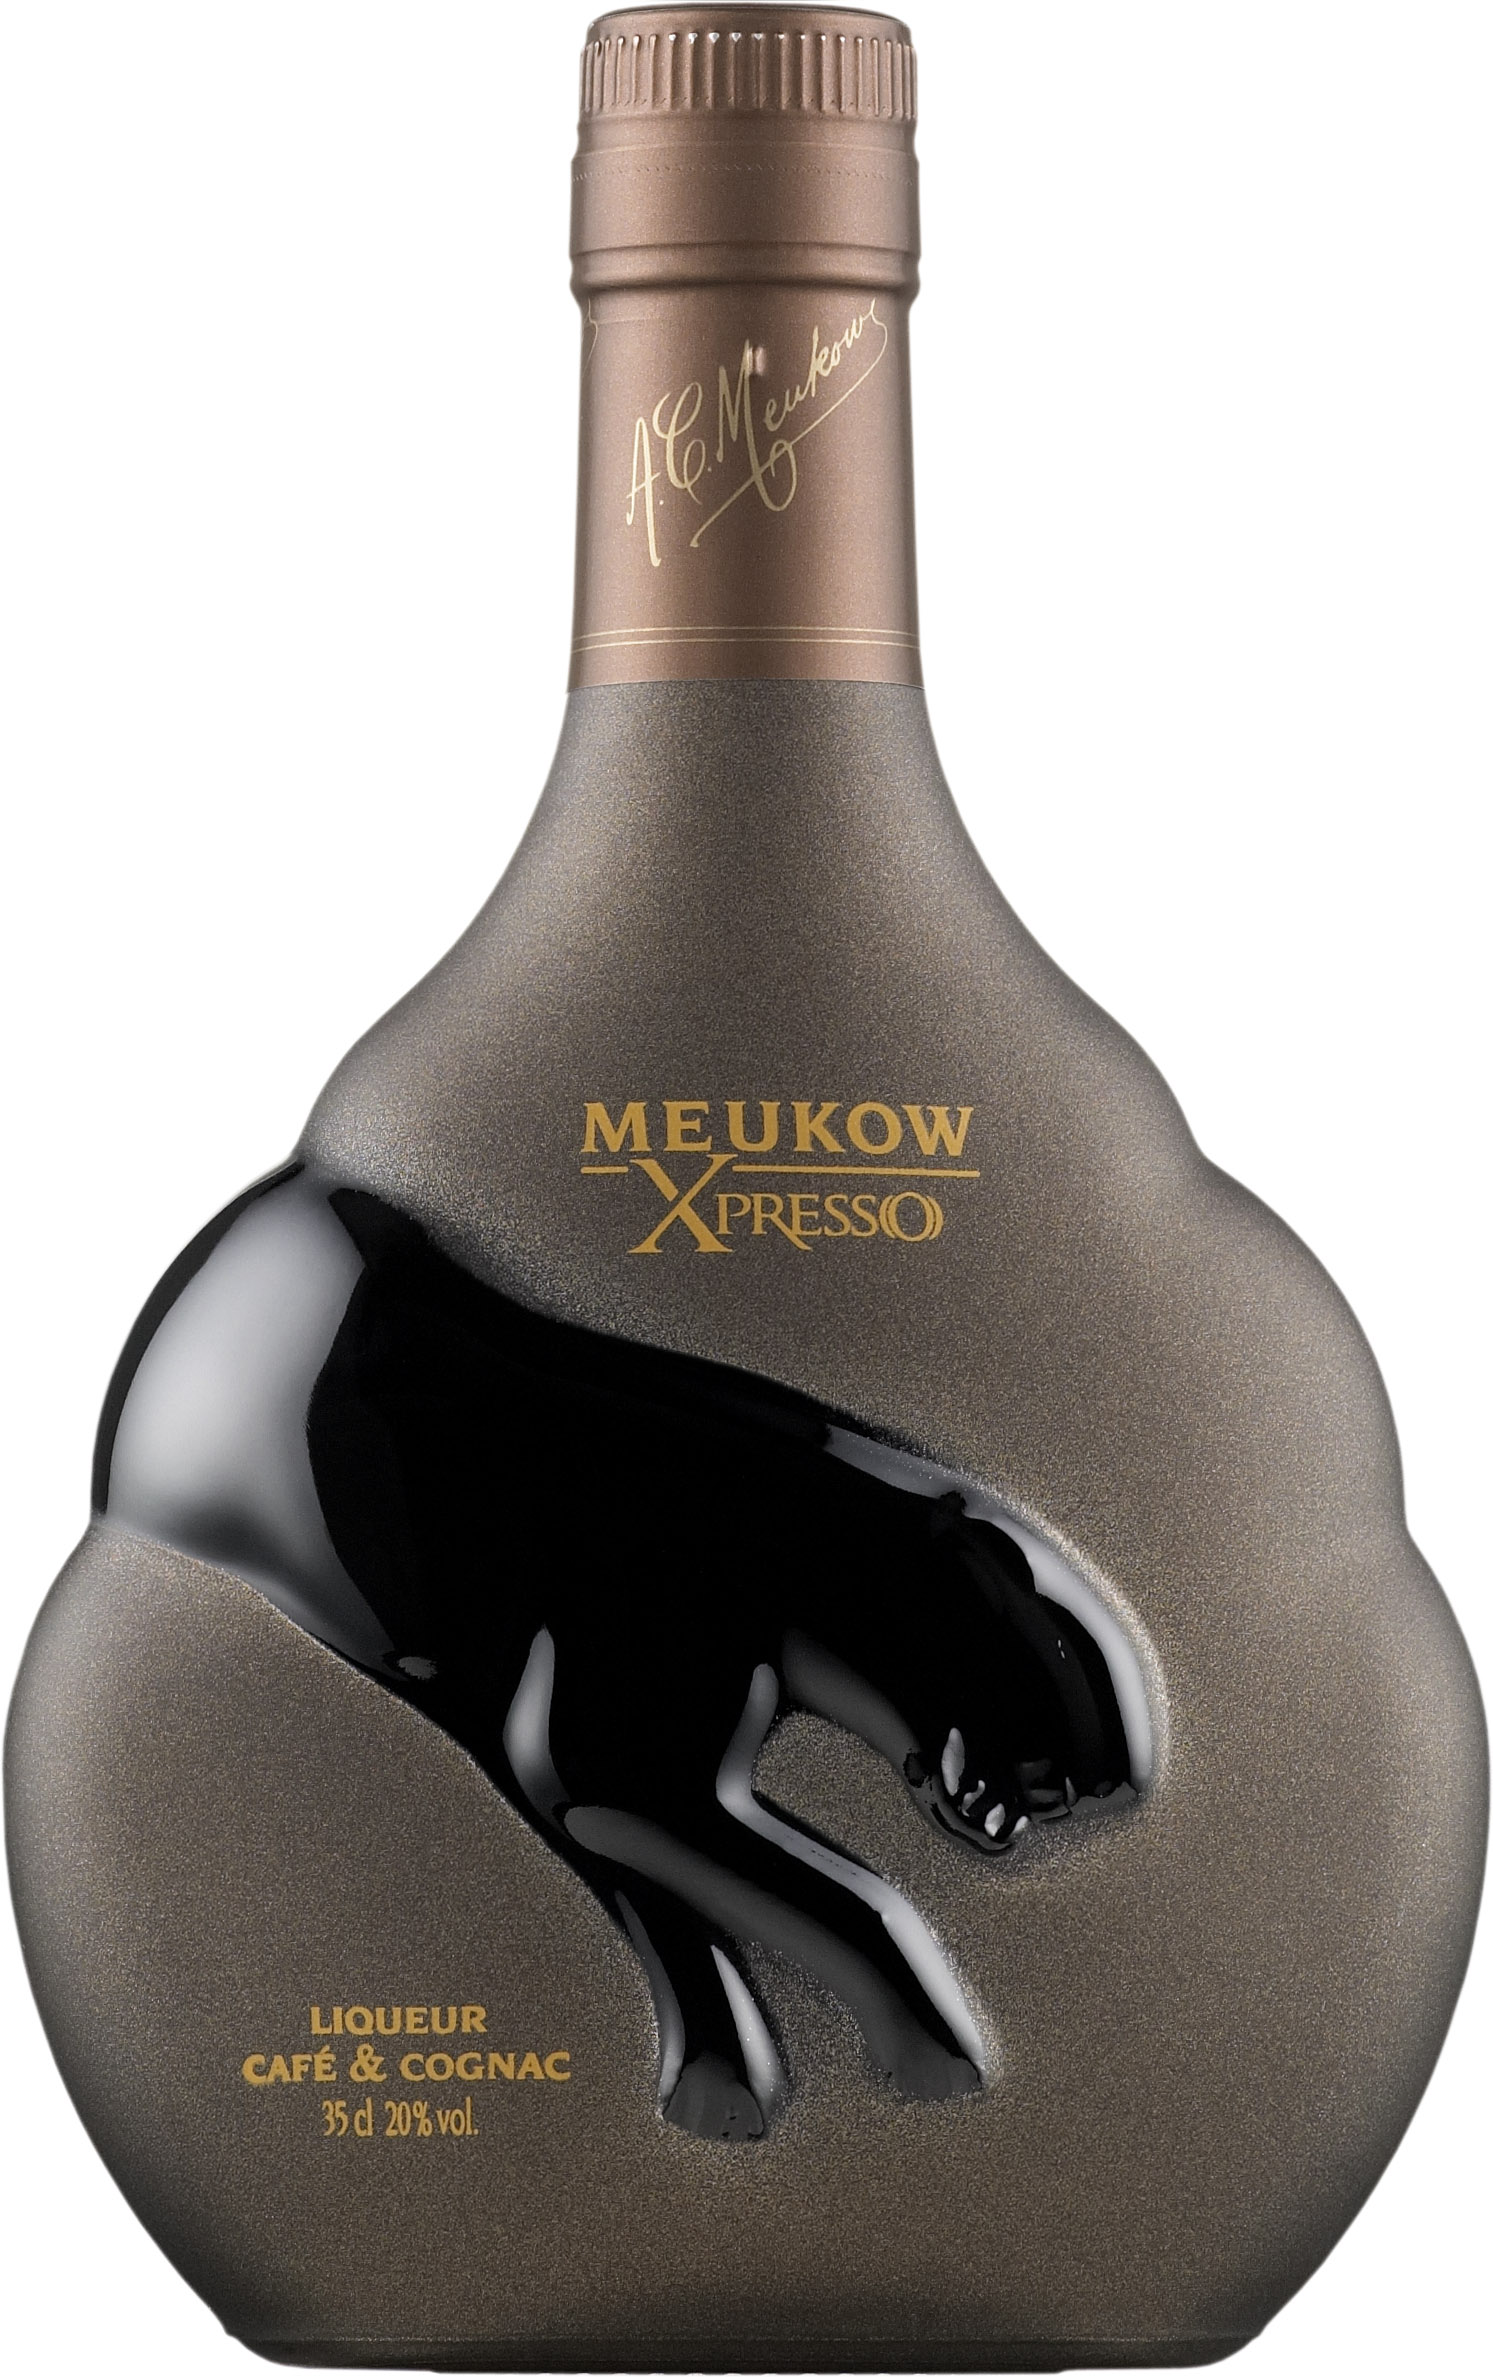 Meukow Xpresso